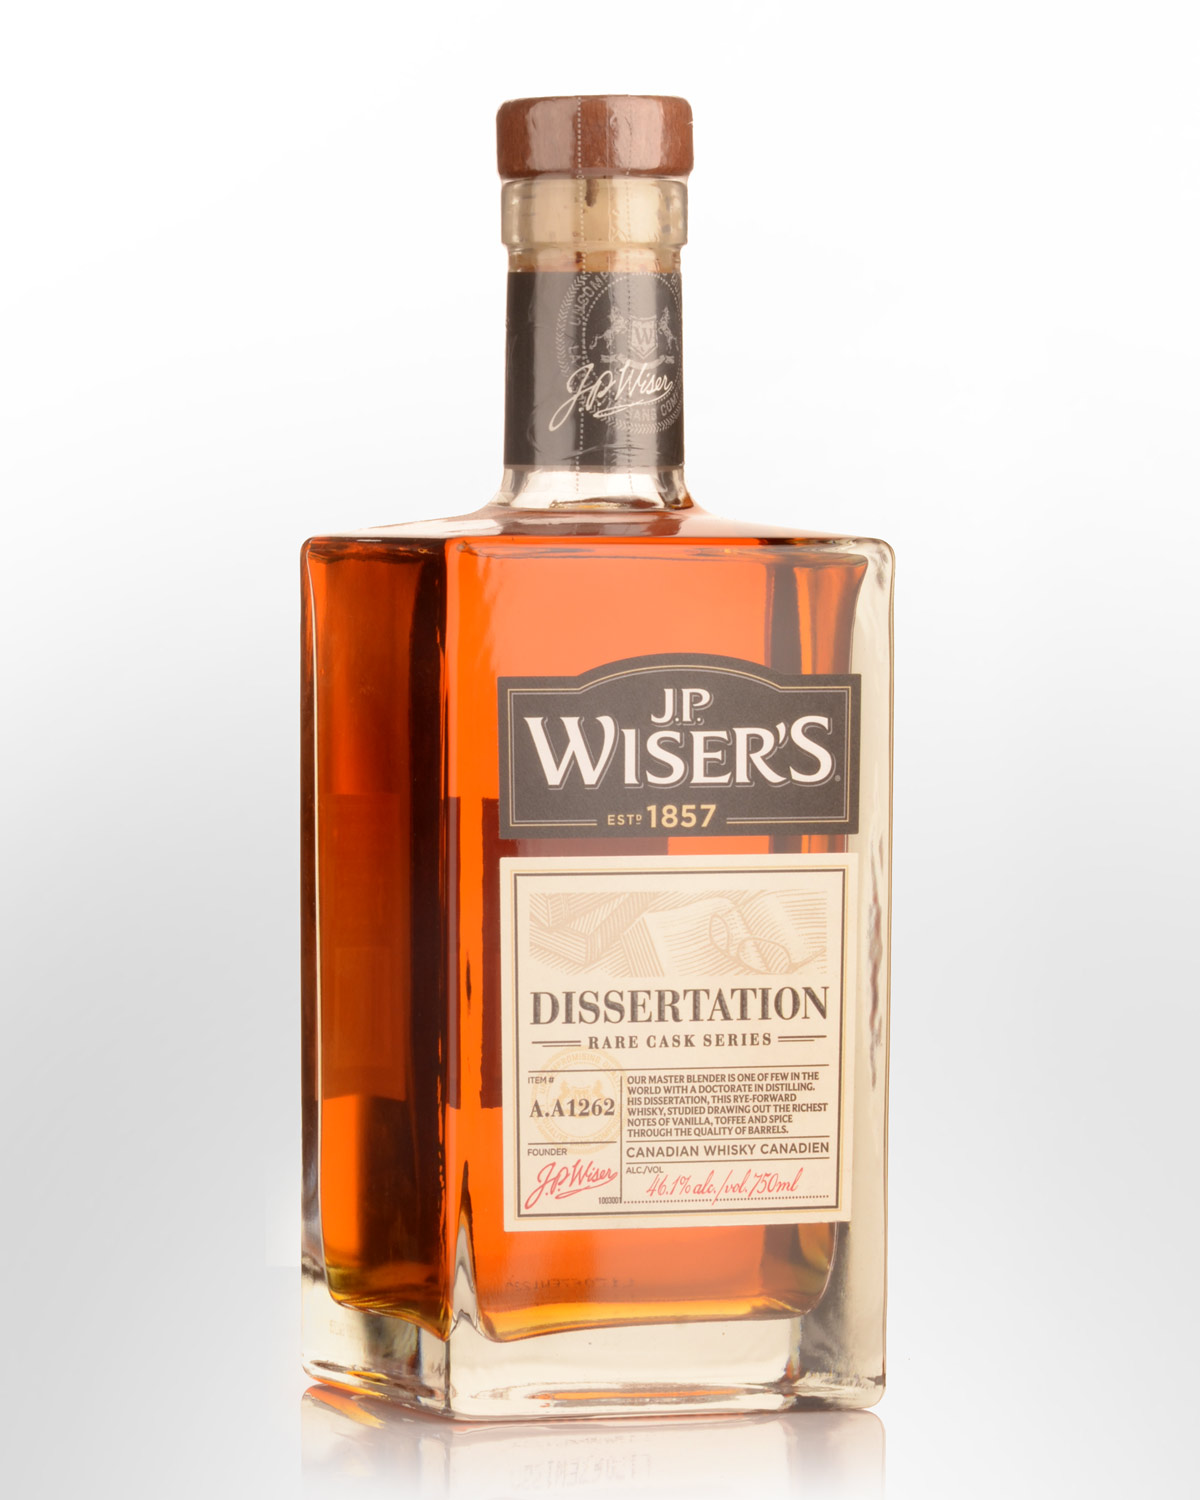 J.P. Wiser's Dissertation Rare Cask Series Blended Canadian Whisky (750ml)